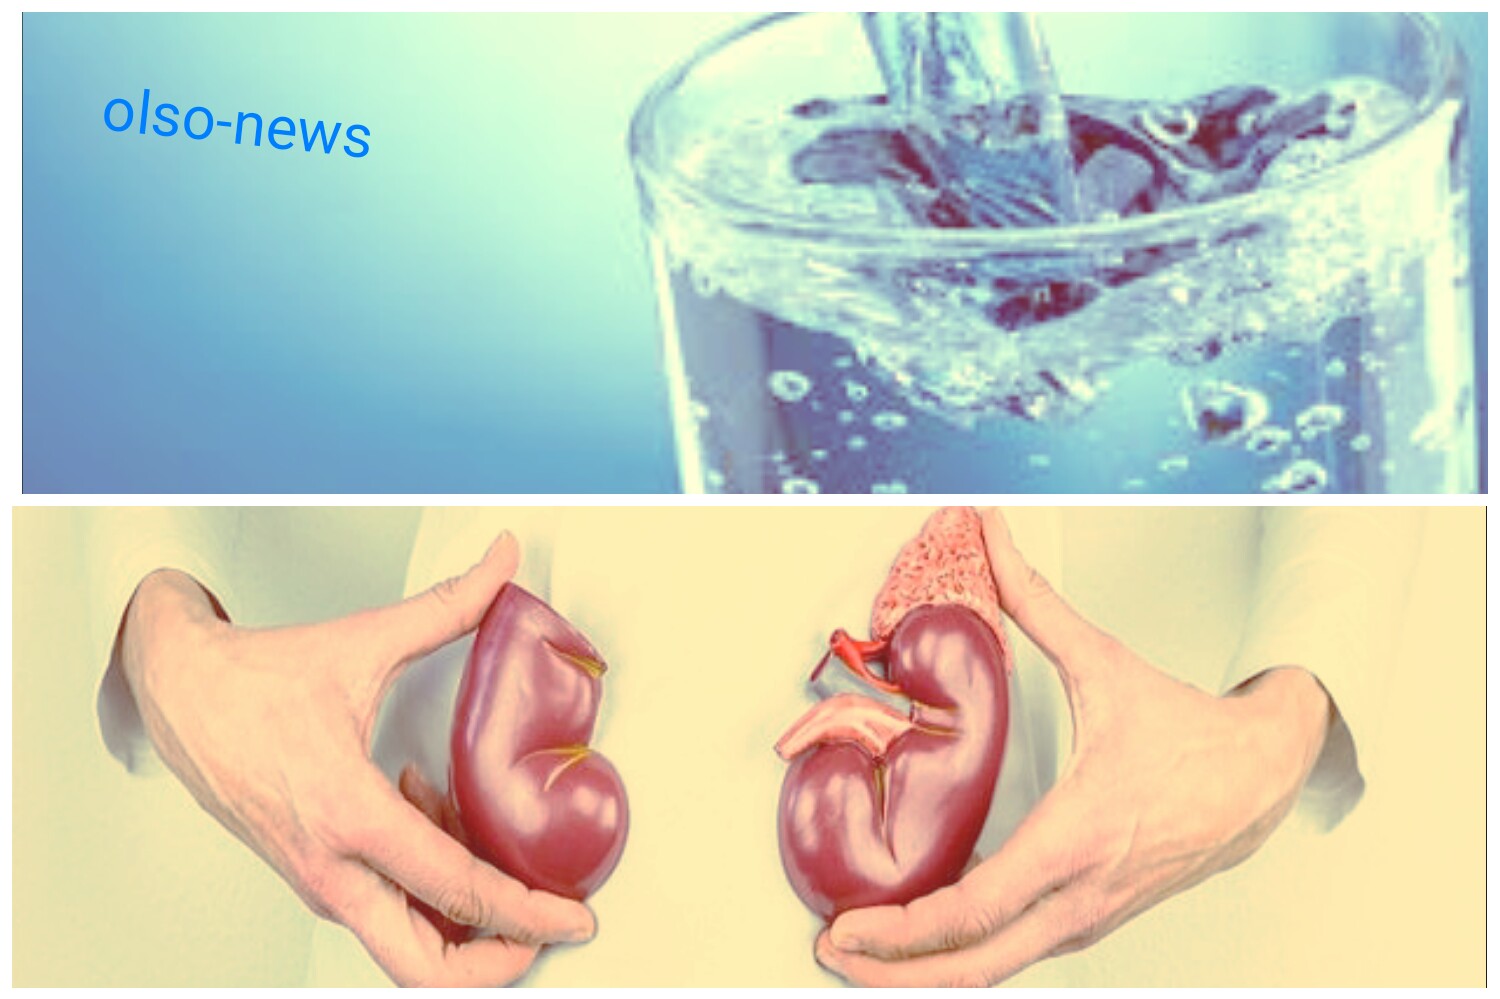 الجفاف الشديد في الكلى داخل جسم الأنسان بسبب نقص عملية شرب الماء با الكمية الكافية